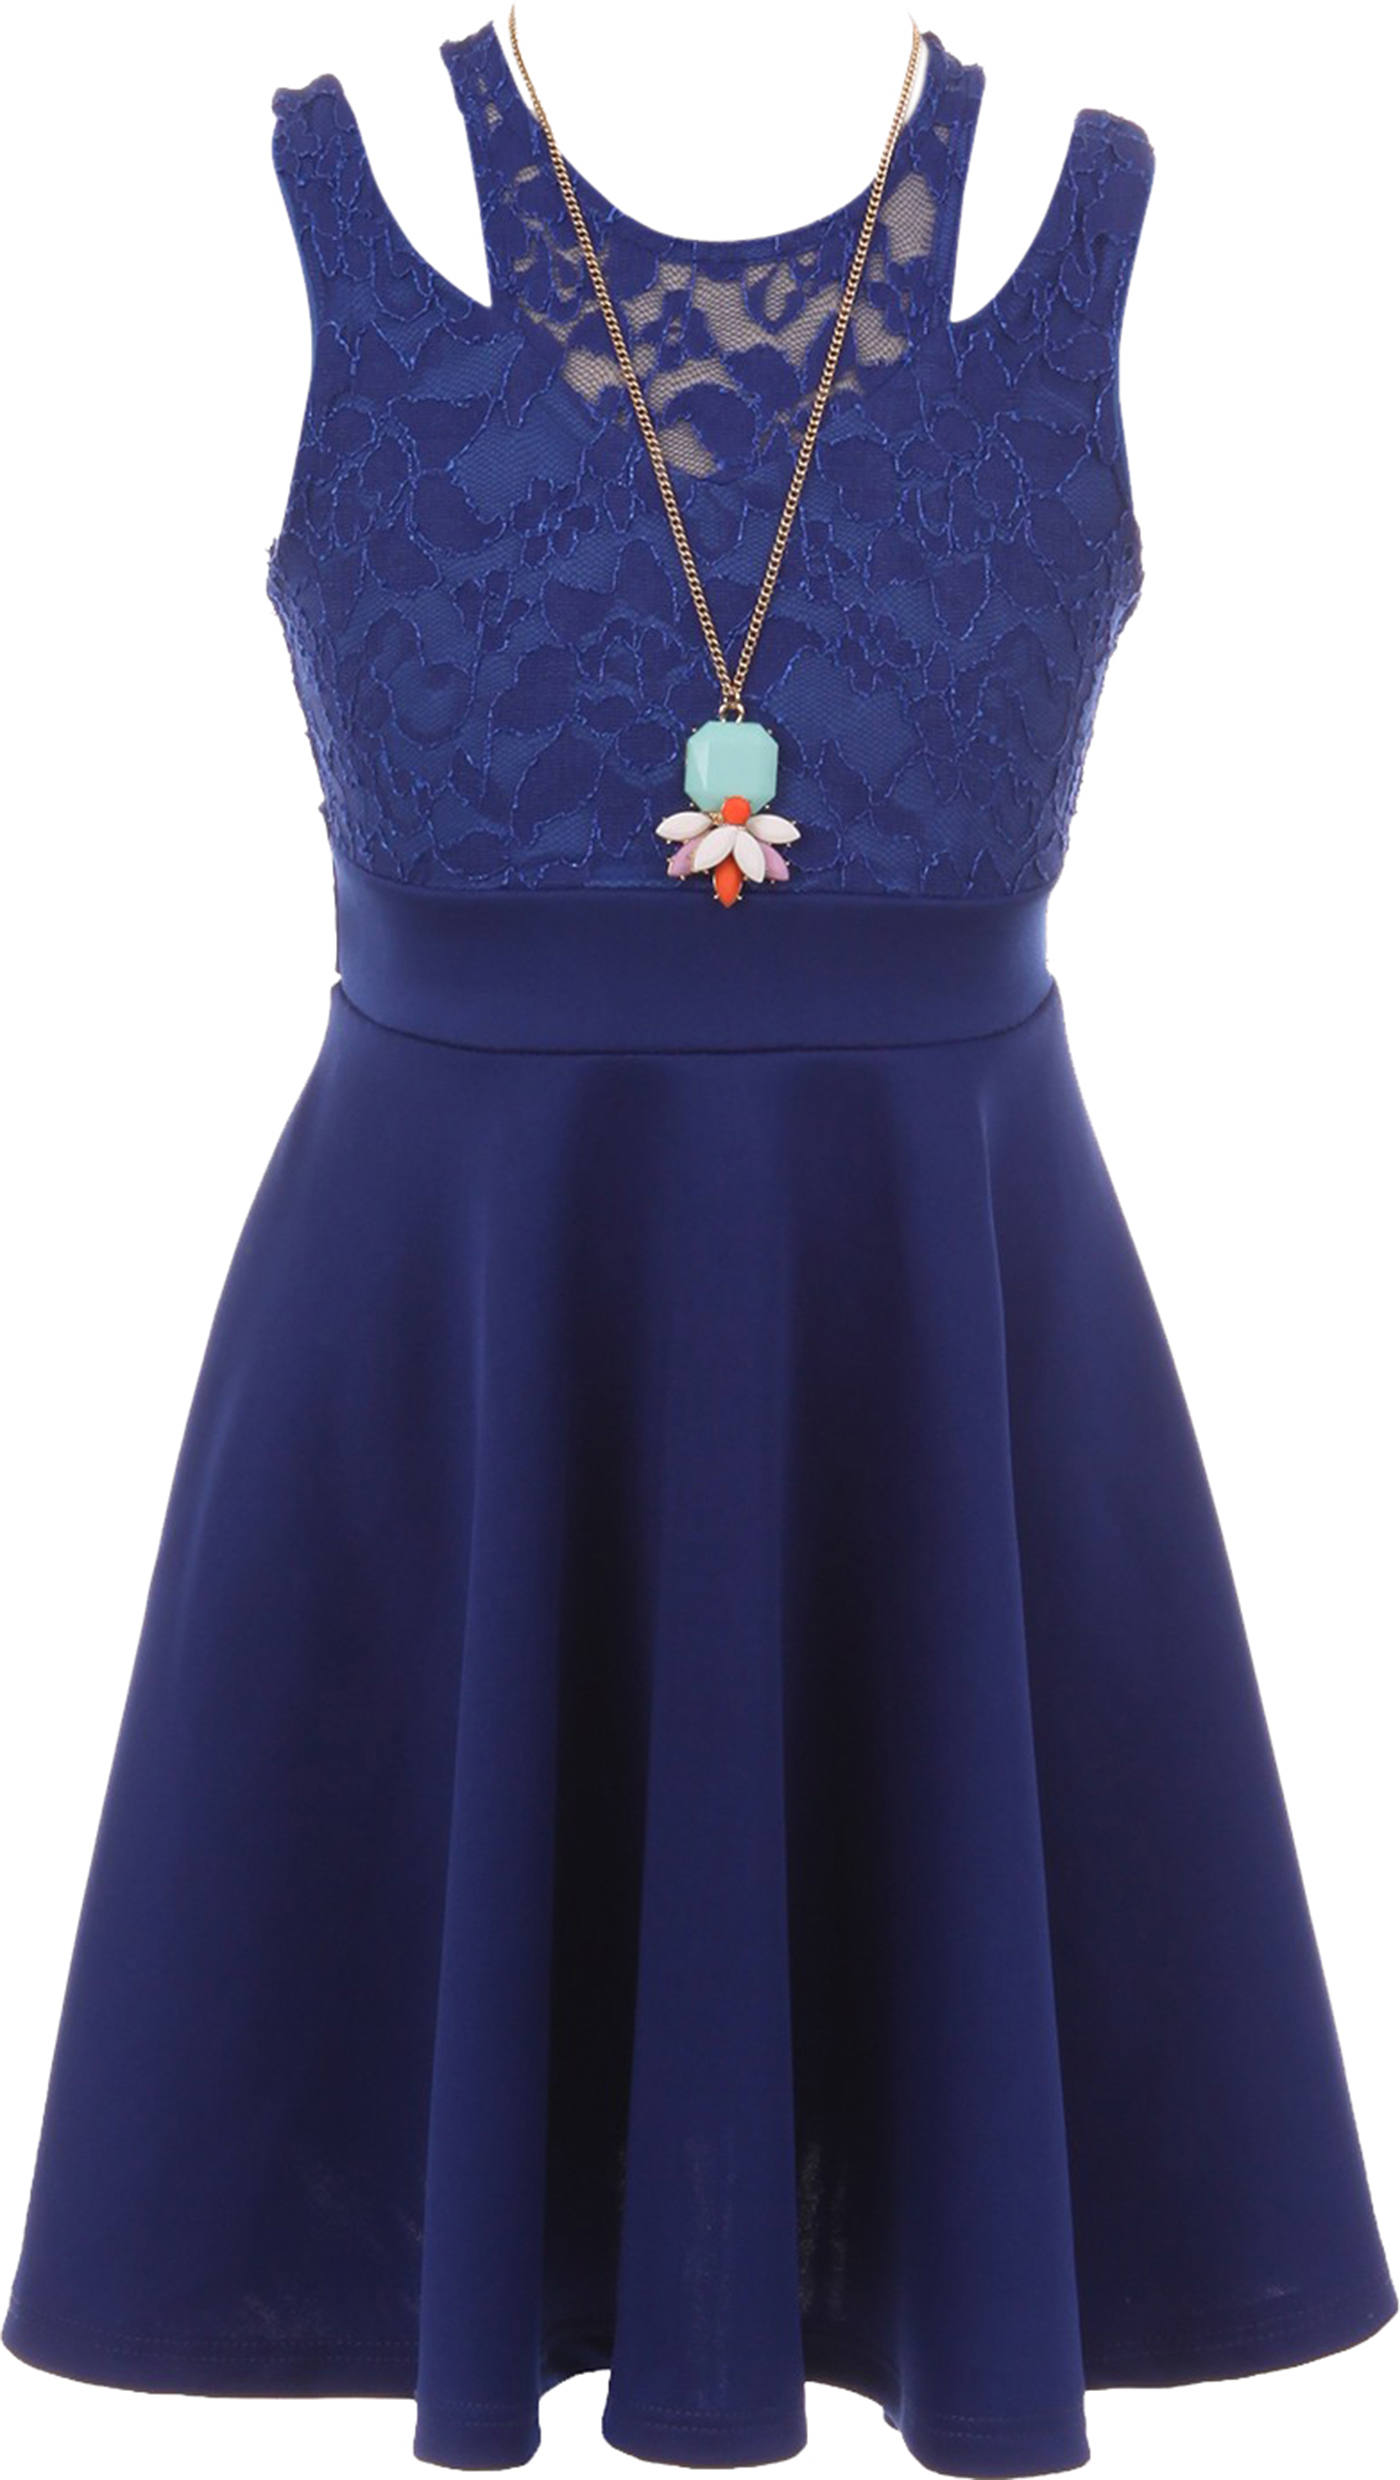 Big Girls Elegant Floral Lace Top Necklace Easter Party Flower Girl Dress Royal Blue 10 (2J1K1S4) - image 1 of 5